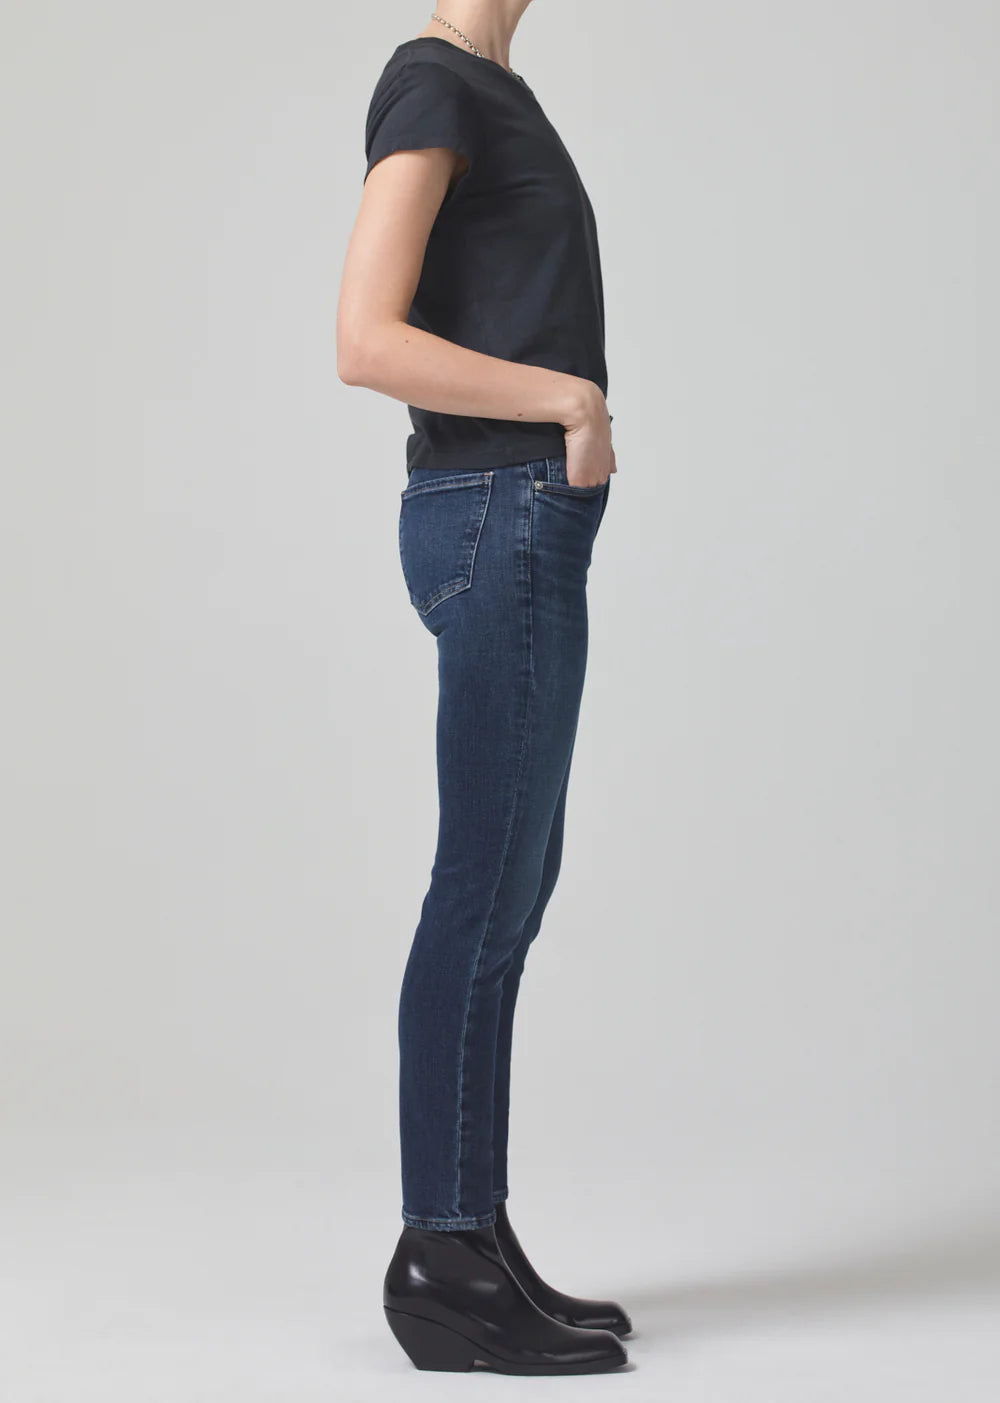 Sloane Skinny Jeans in Baltic